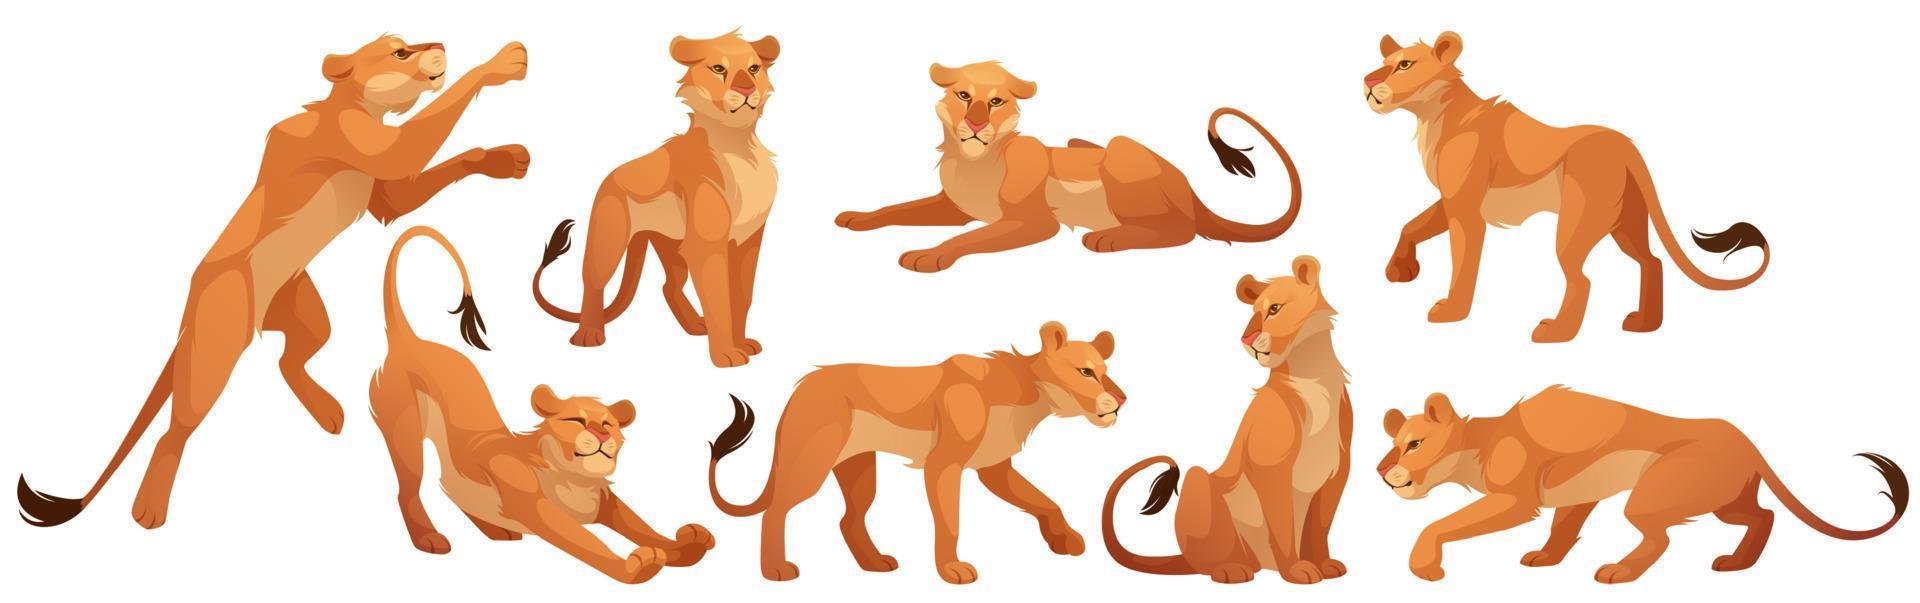 personaje de leona, gato salvaje en diferentes poses vector